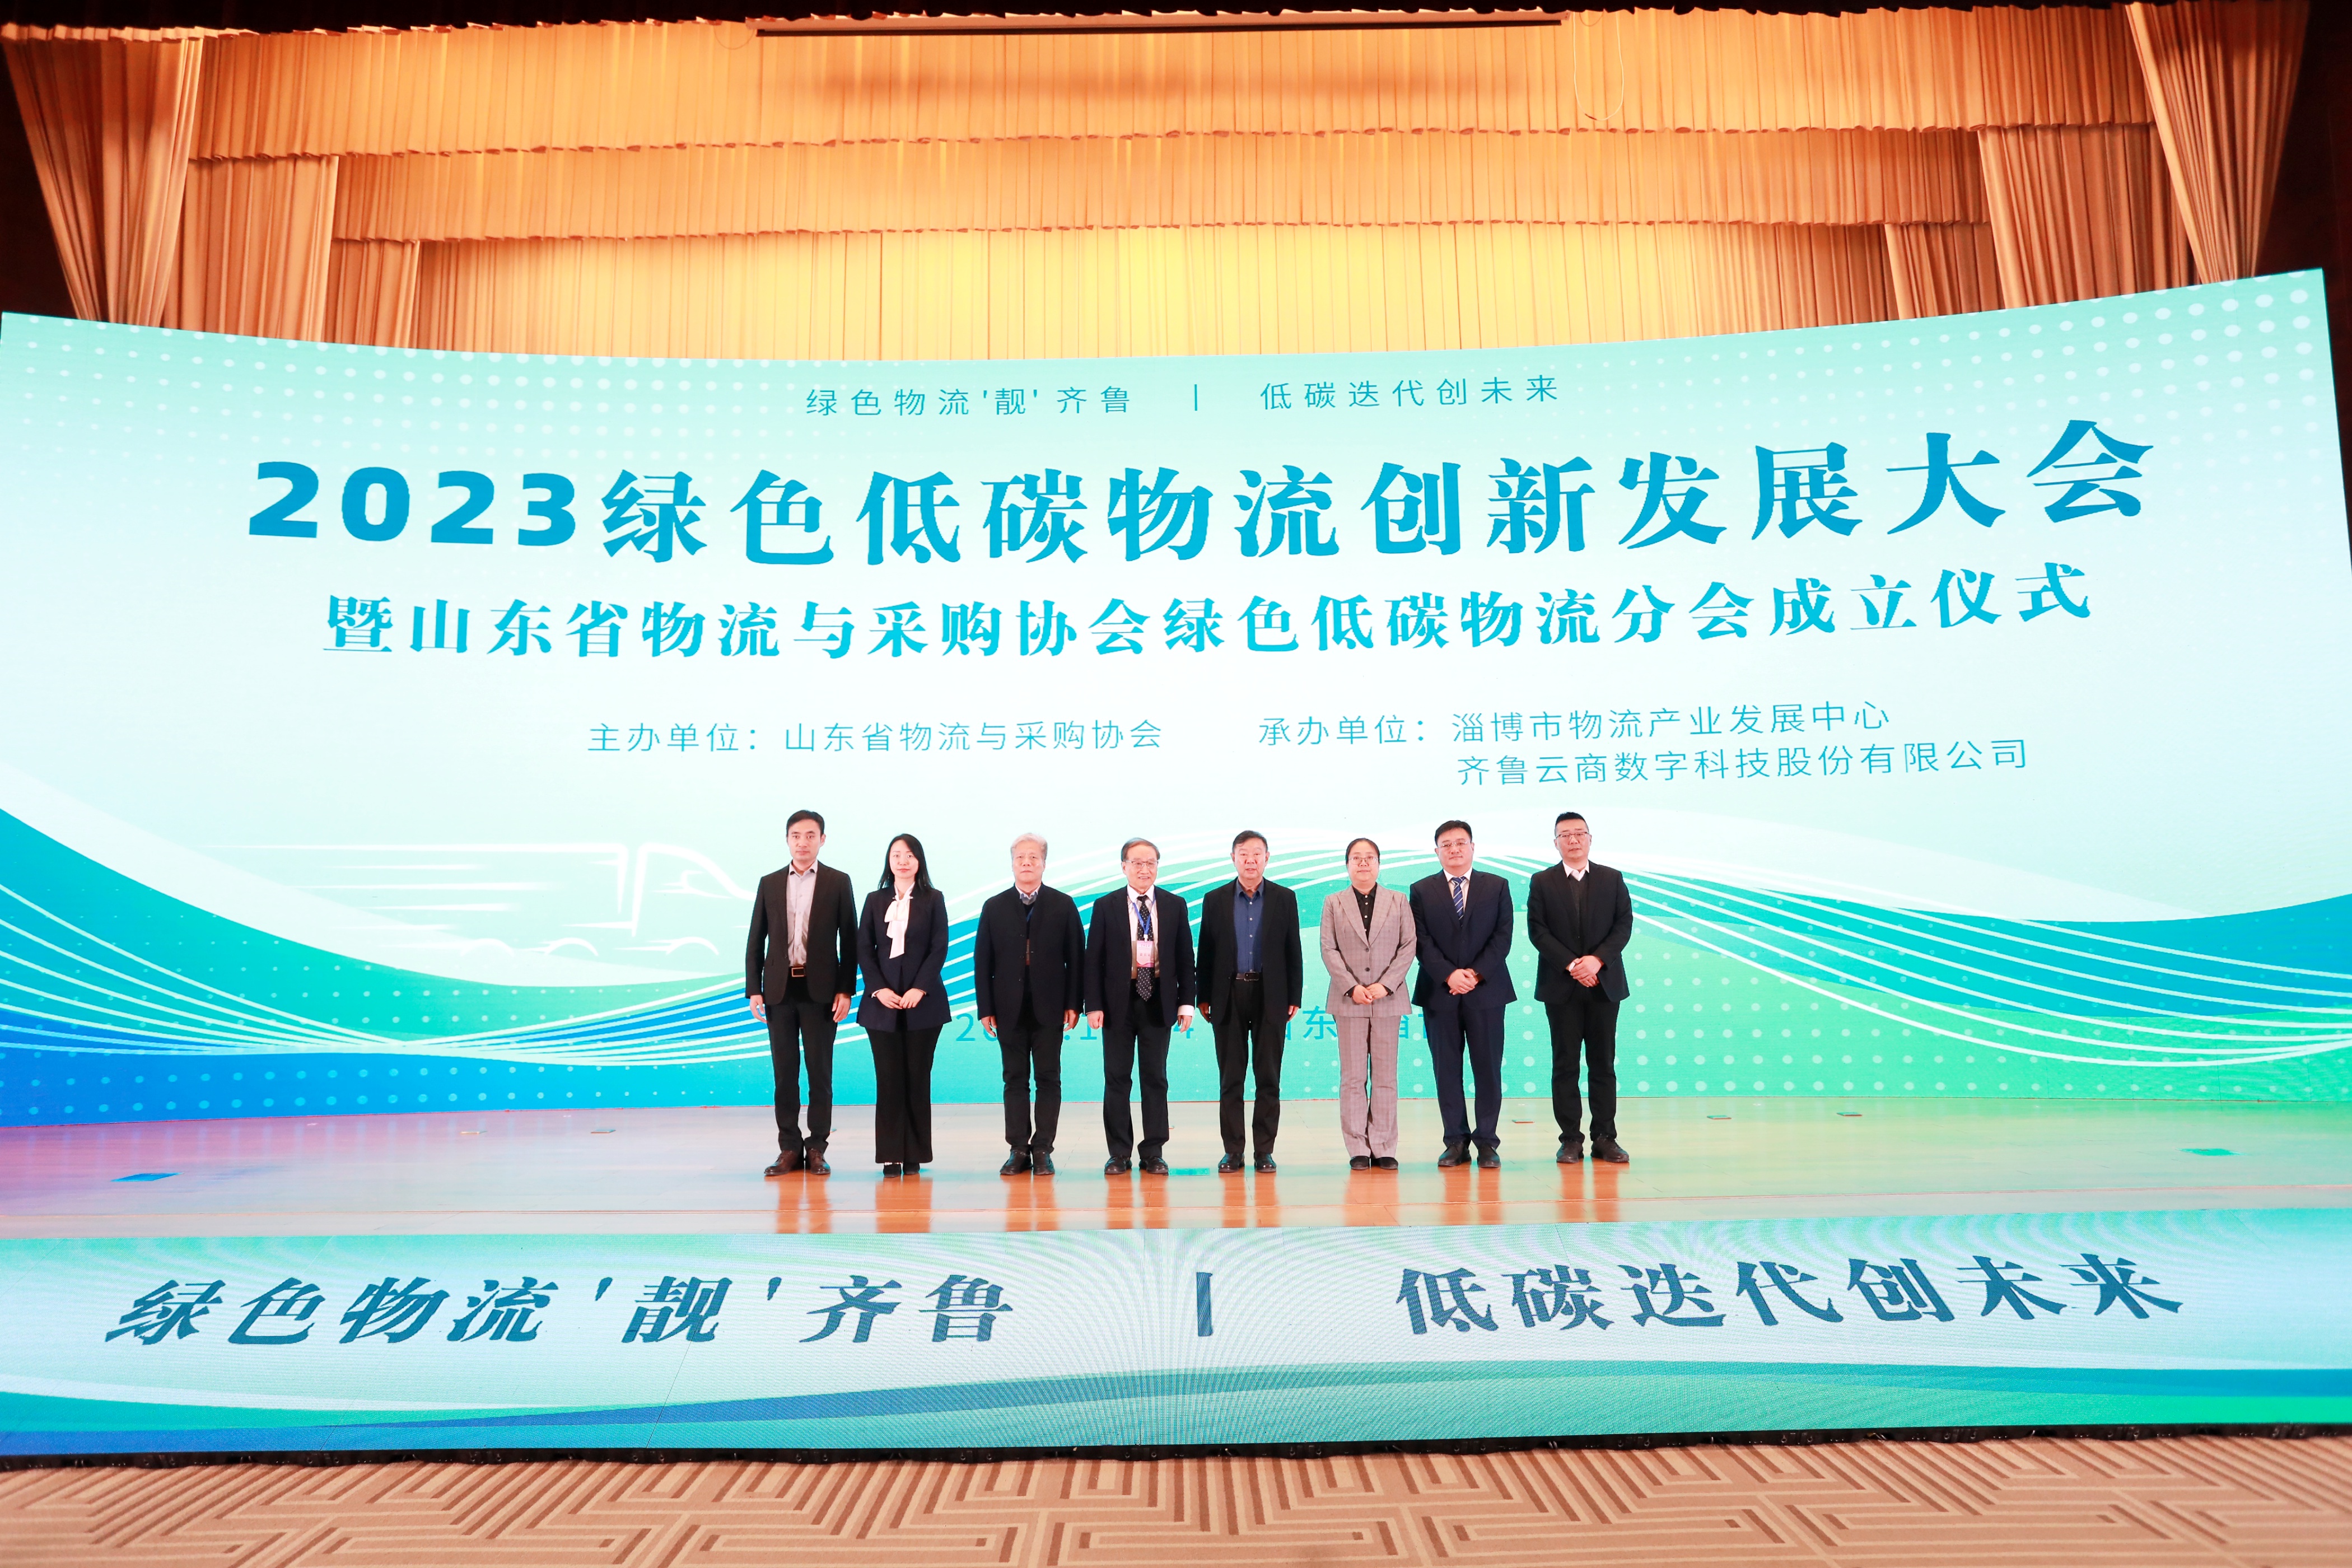 2023绿色低碳物流创新发展大会暨山东省物流与采购协会绿色低碳物流分会成立会议在淄博成功举办